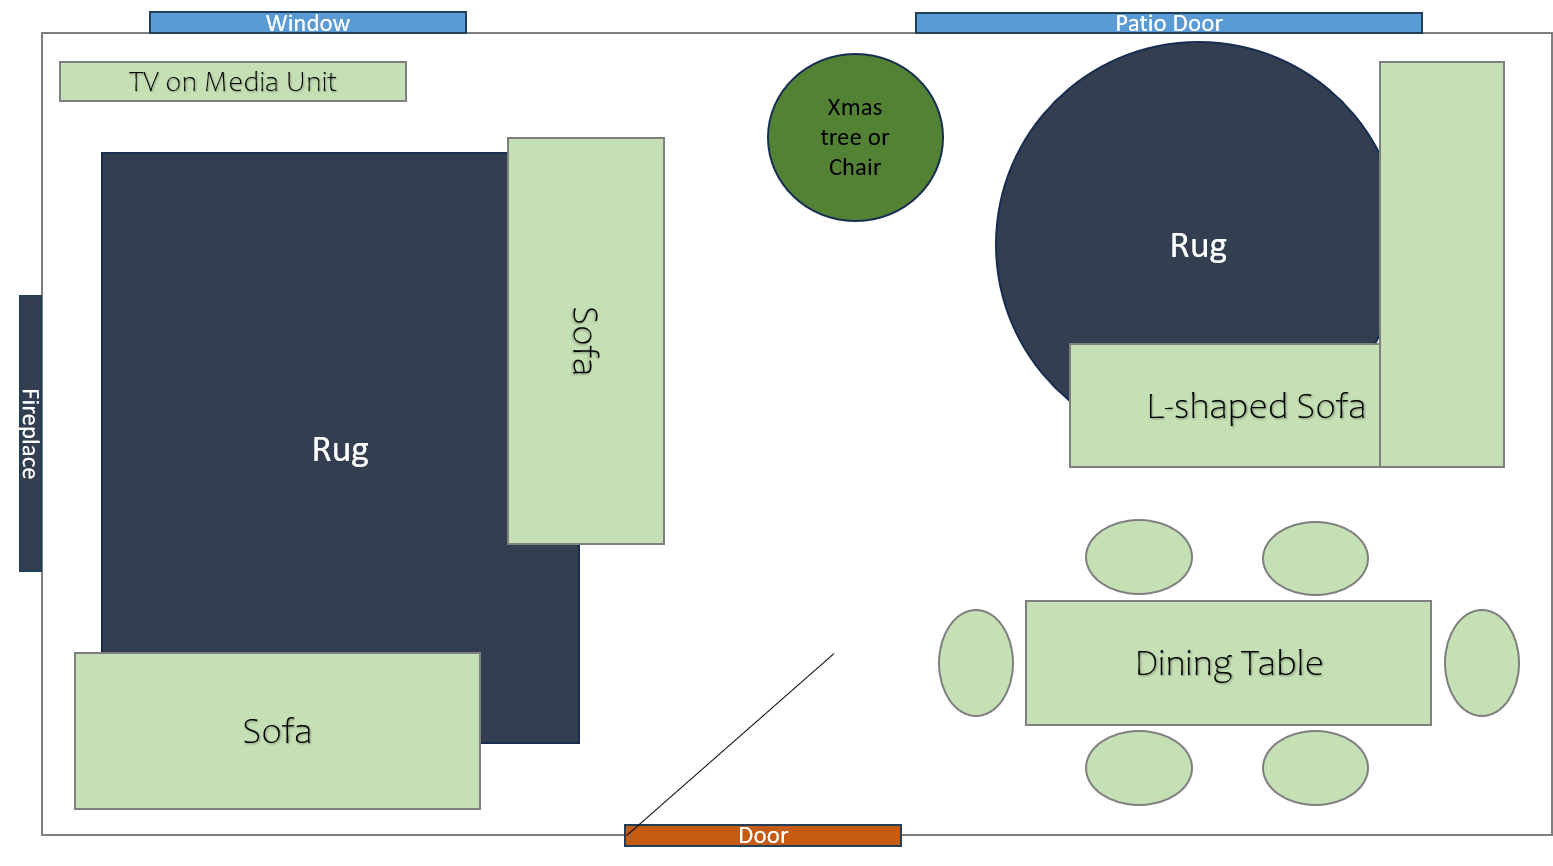 Furniture layout scheme